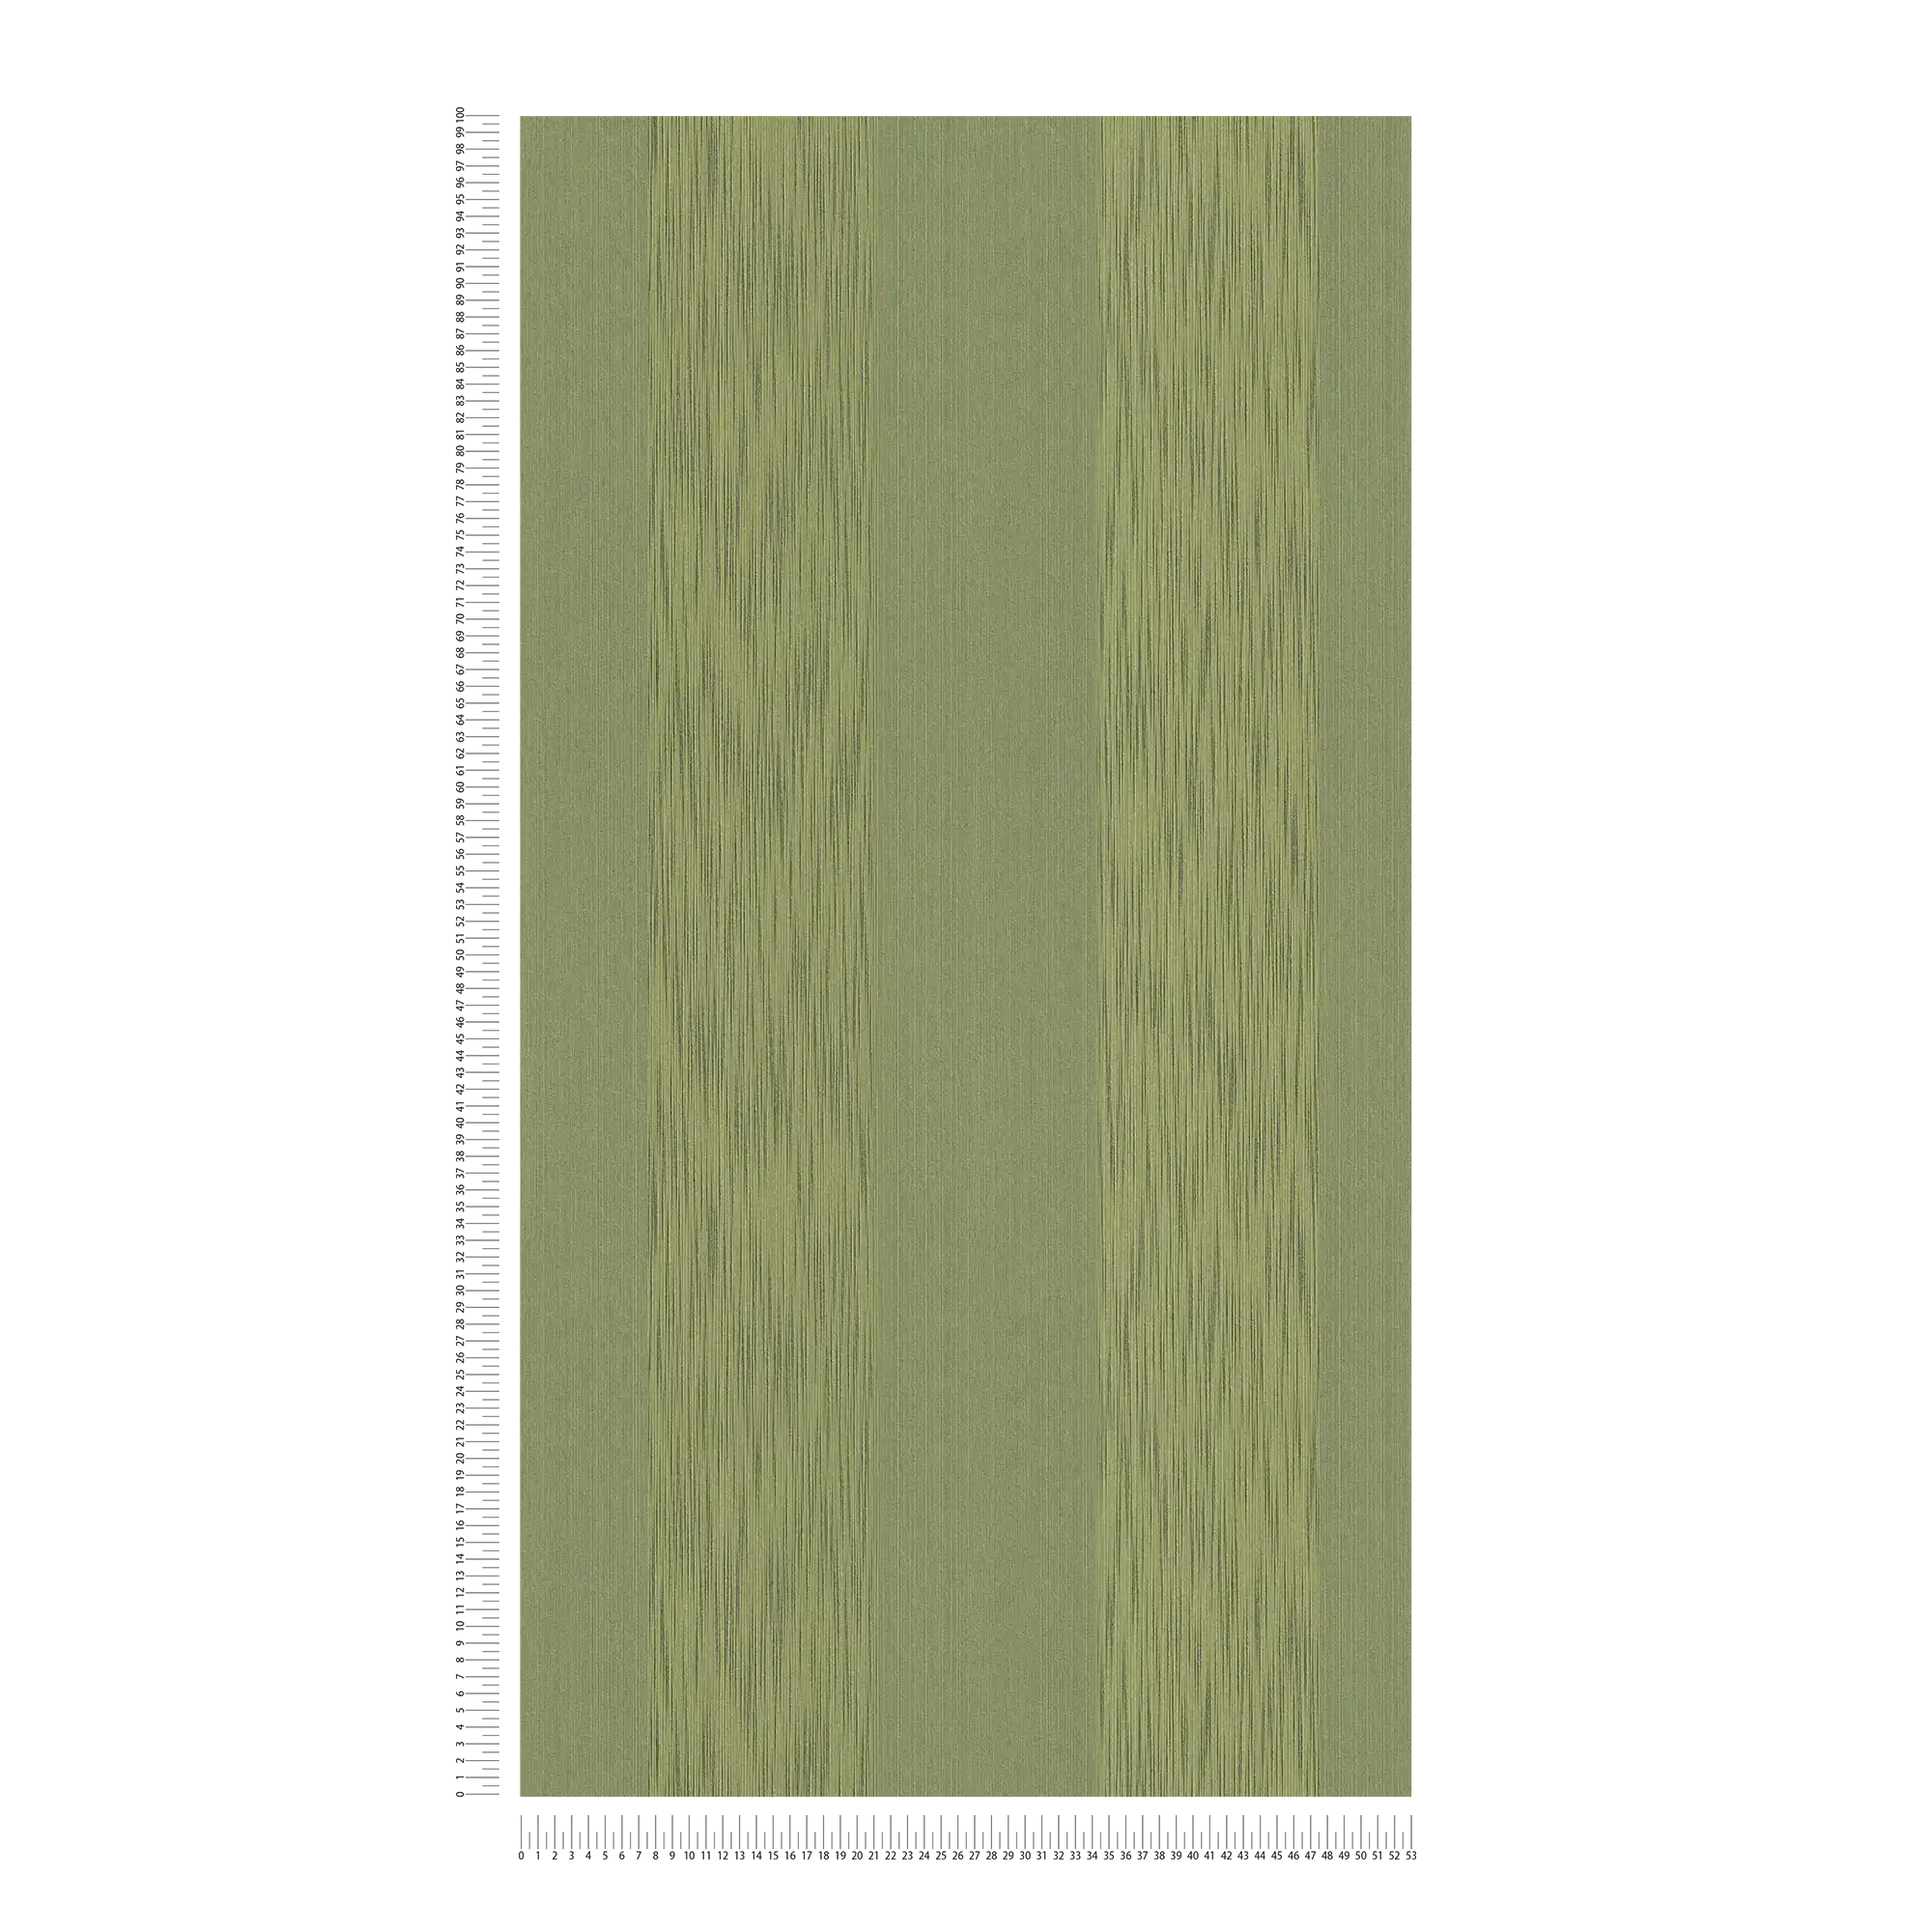             Strukturtapete mit Metallic Effekt & Streifenmuster – Grün
        